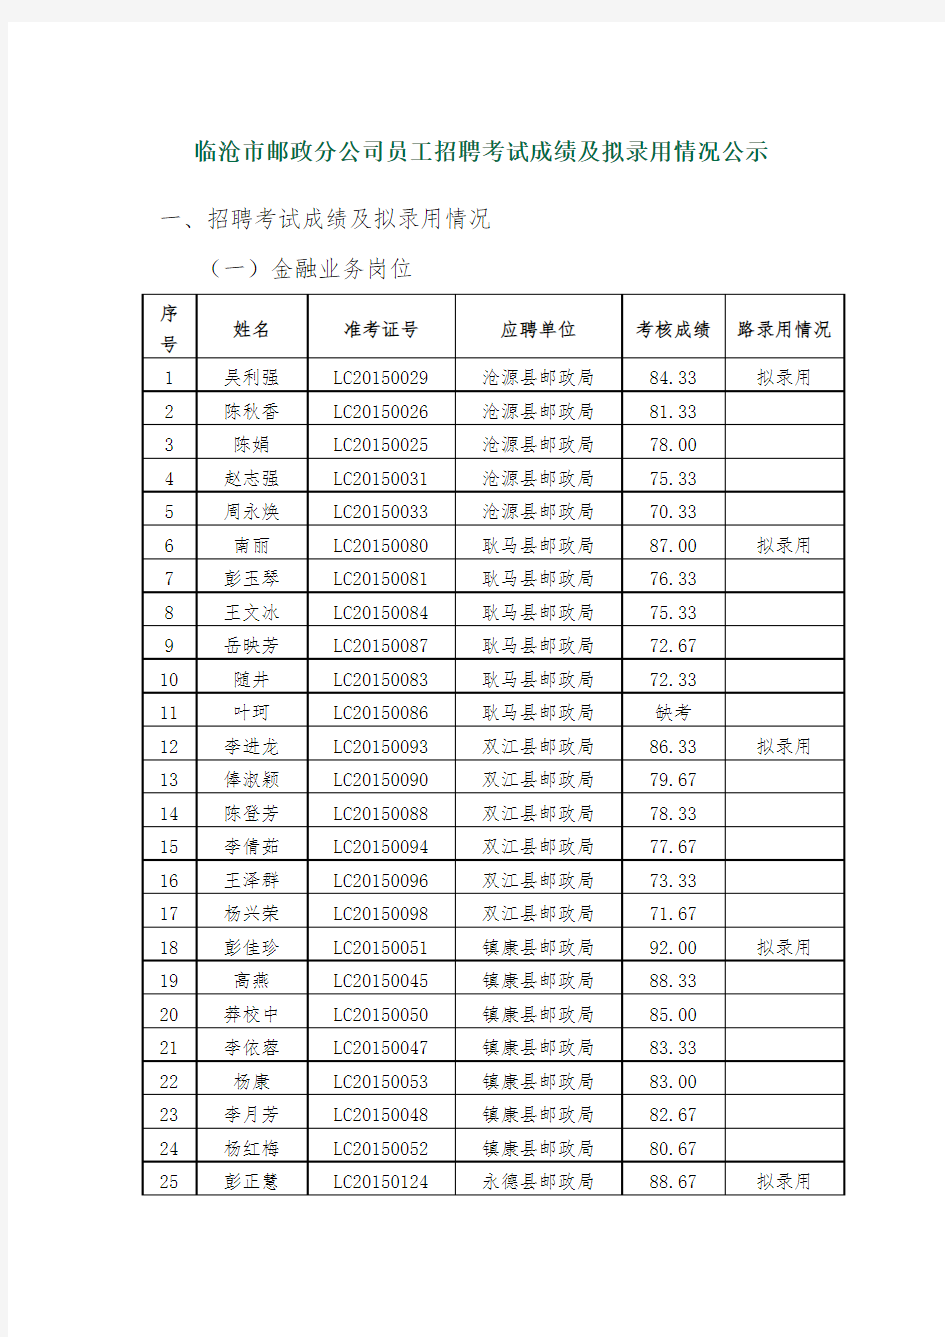 临沧市邮政分公司员工招聘考试成绩及拟录用情况公示